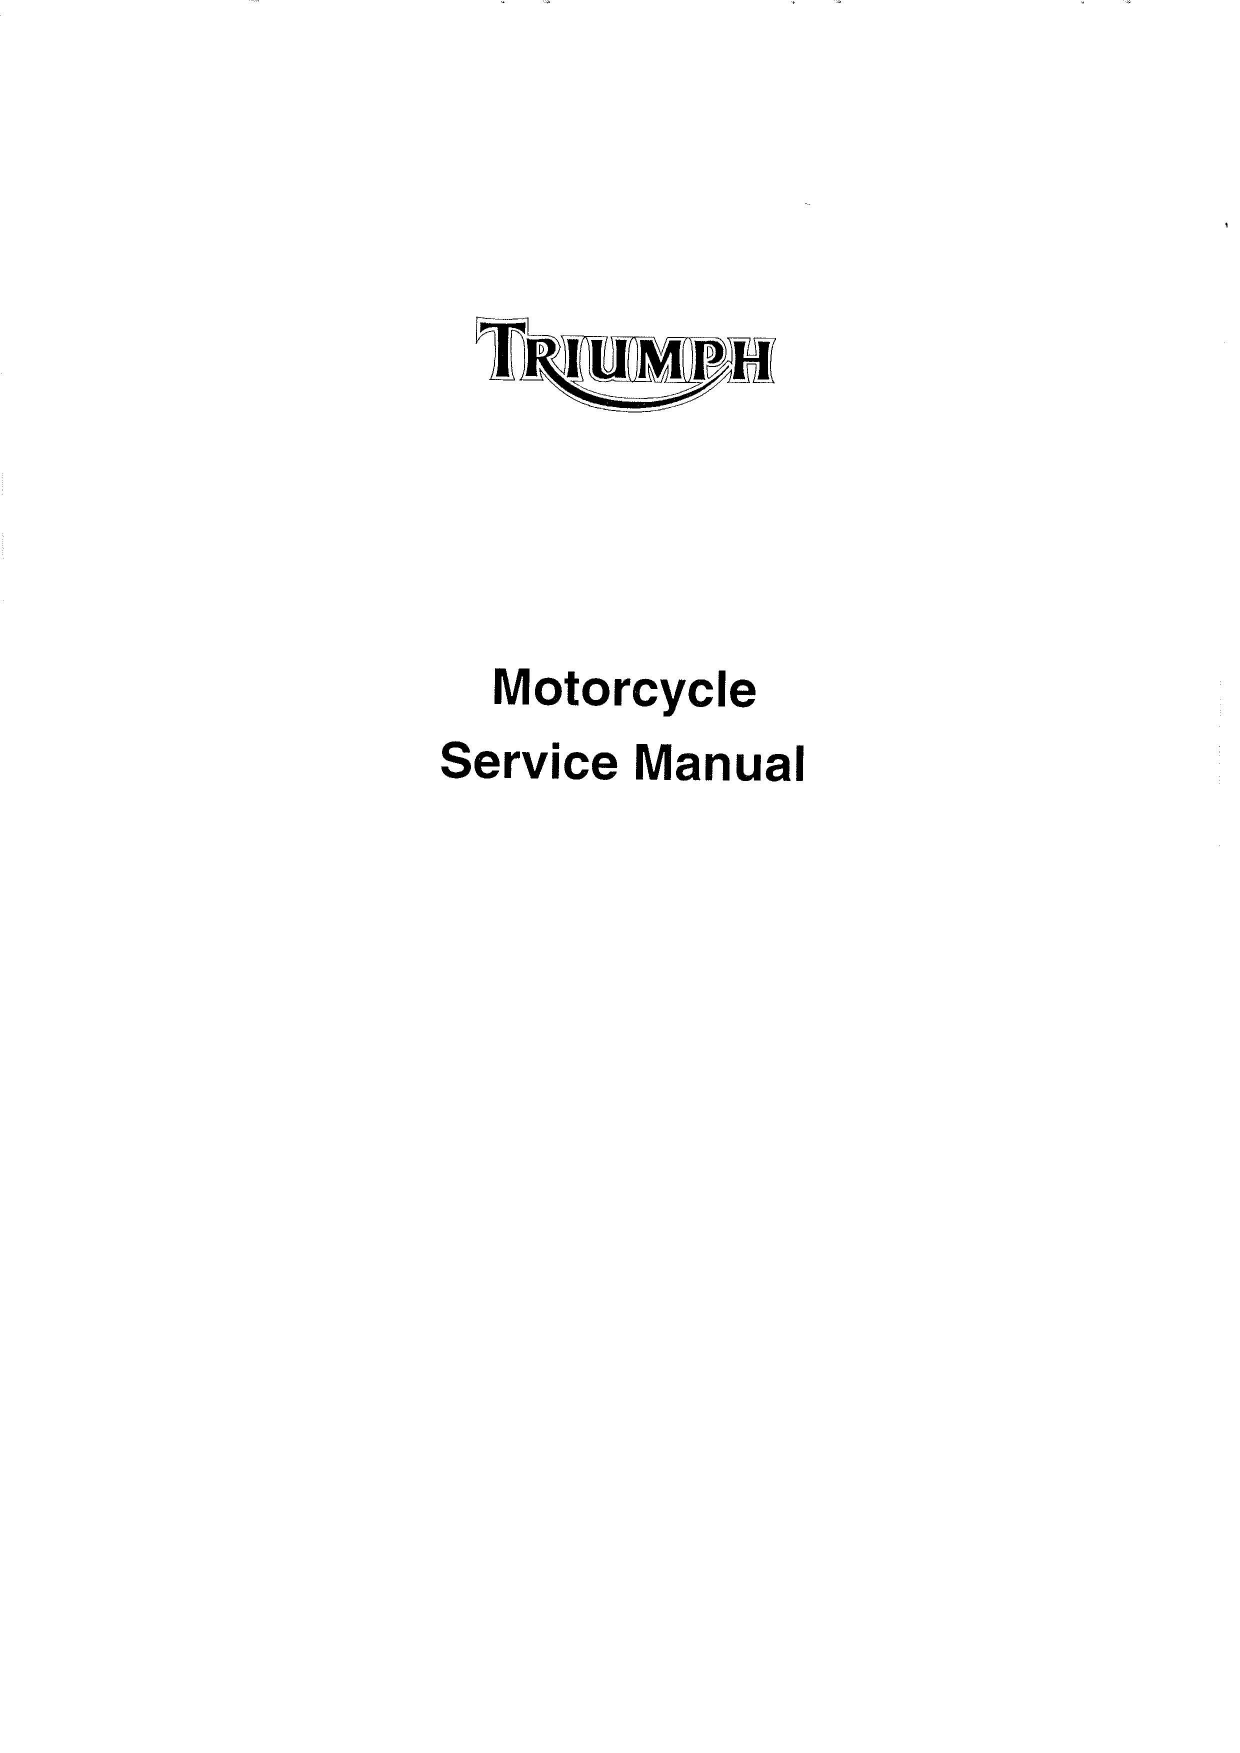 1991-2004 Triumph Trophy 900, Trophy 1200 repair manual Preview image 3